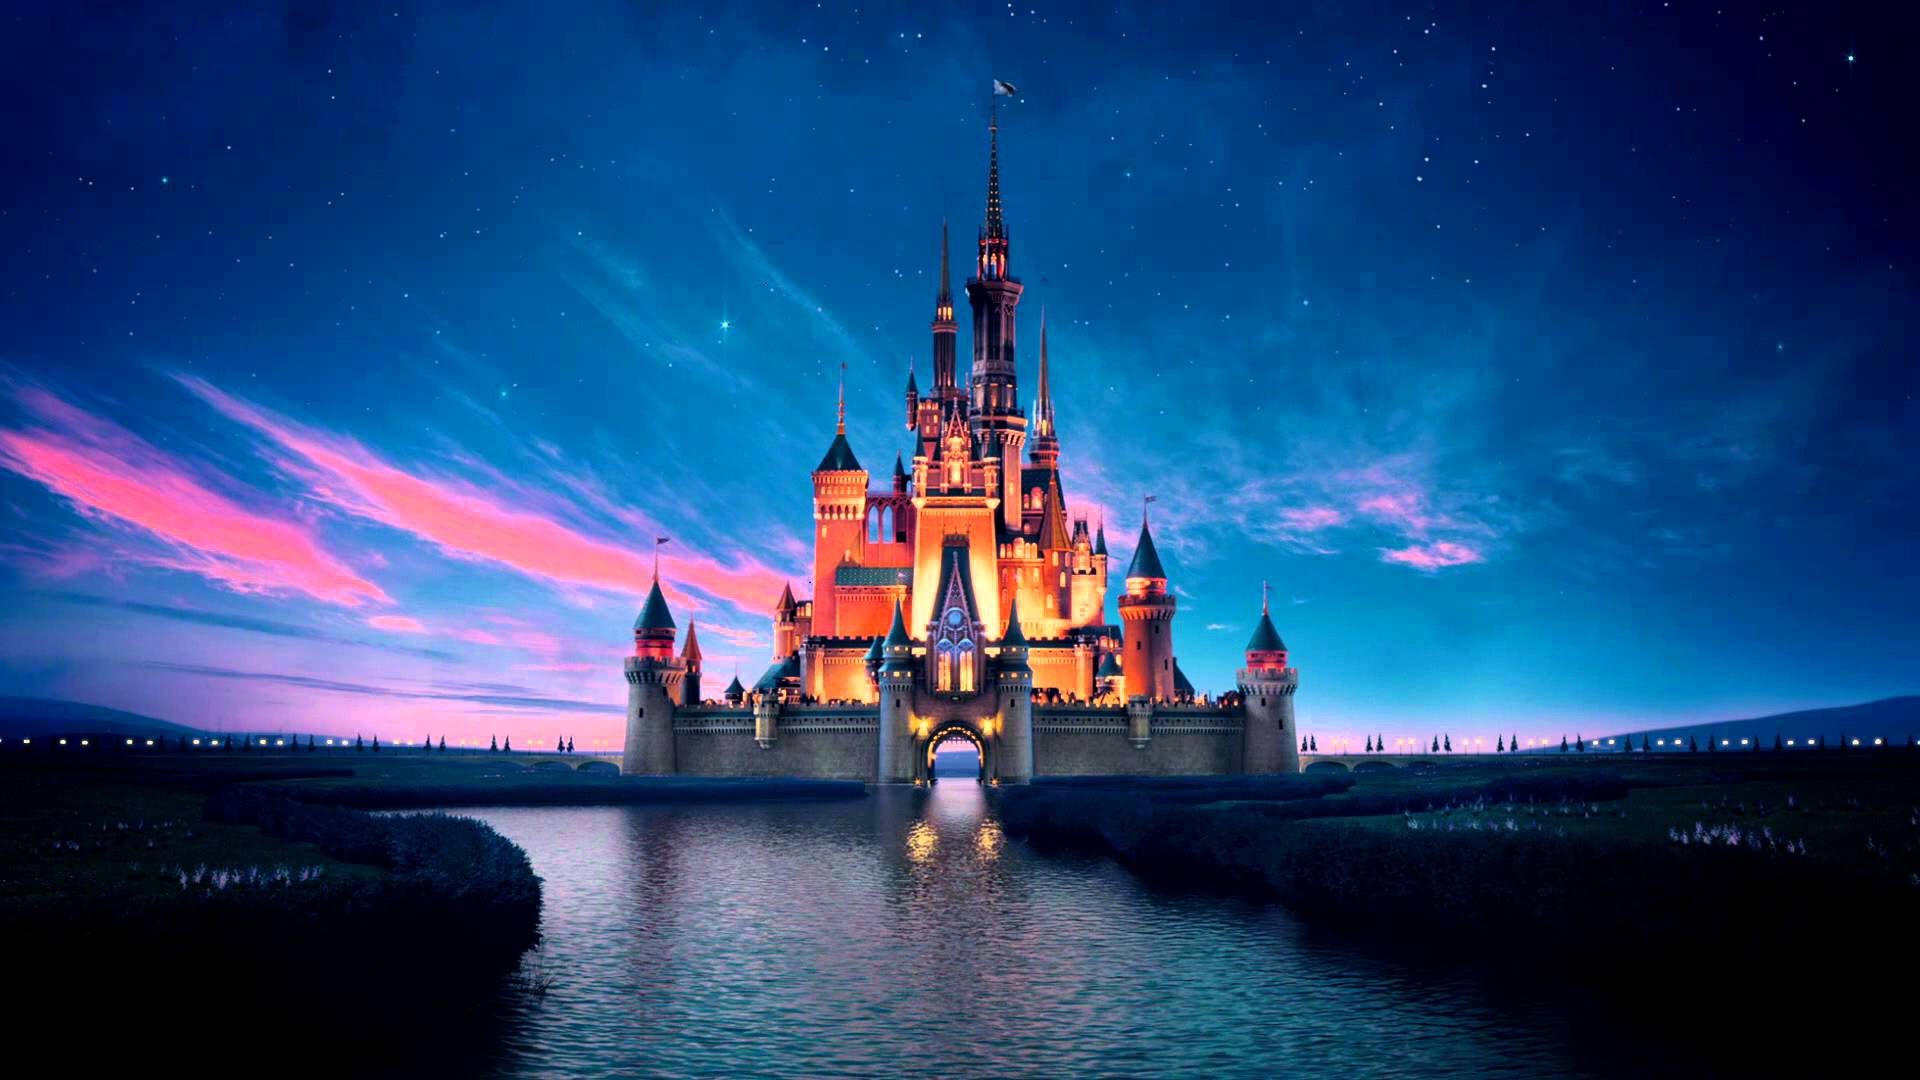 Hình nền Disney Castle sẽ khiến bạn mơ mộng về cuộc phiêu lưu từ cổ tích của công chúa, hoàng tử và kẻ ác. Hãy để màn hình máy tính của bạn trở thành một phần của thế giới đó và cho bạn cảm giác như đang sống trong cổ tích.